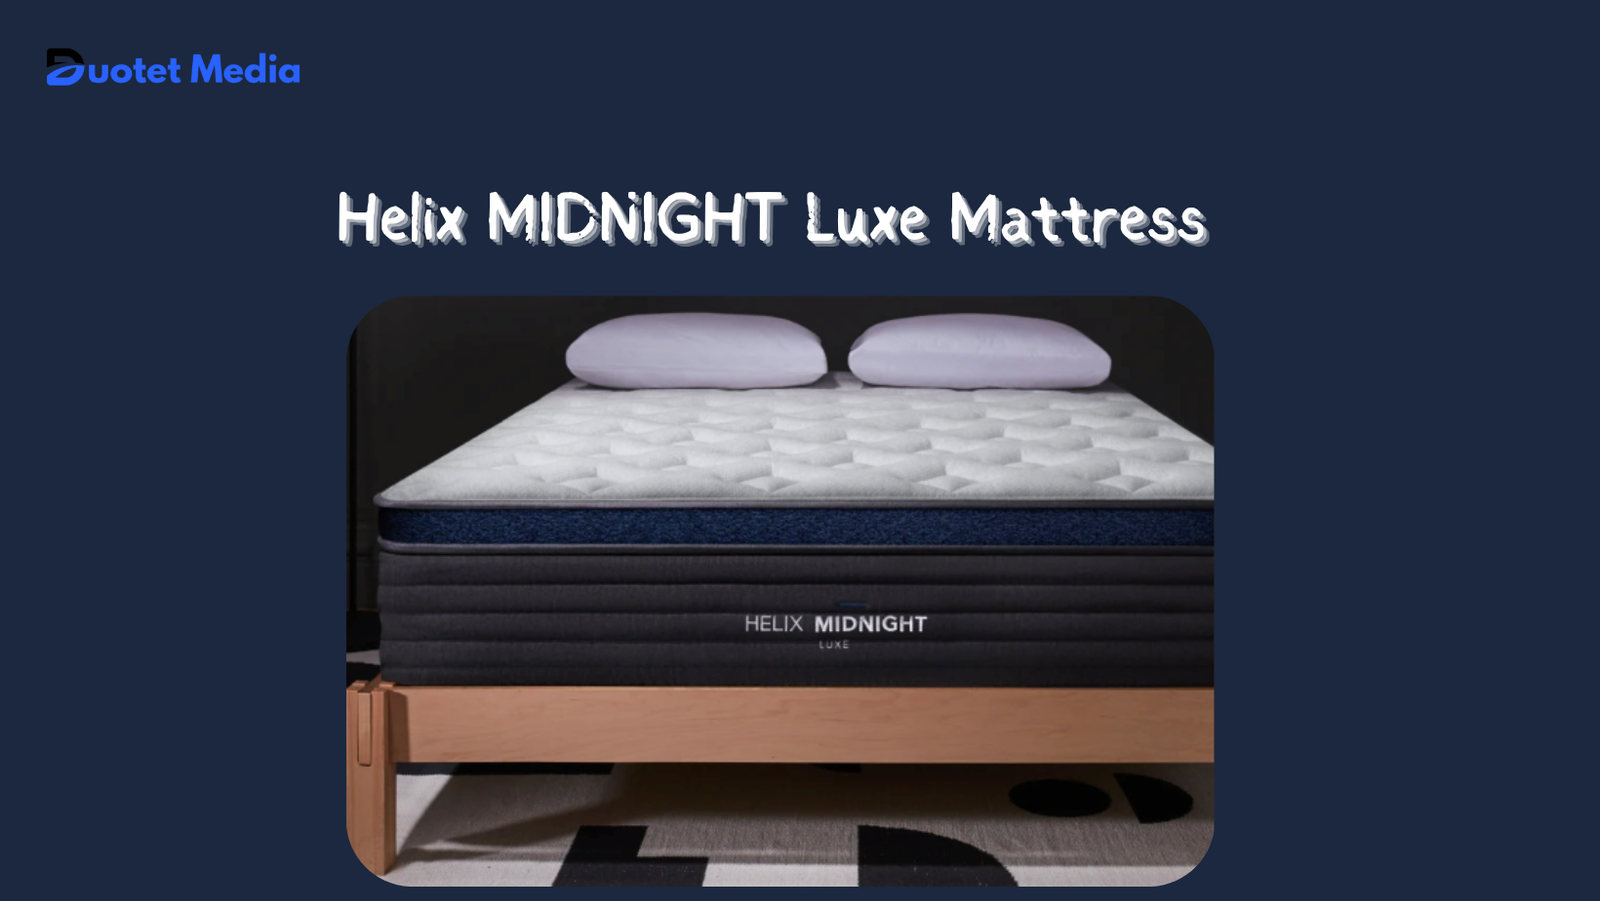 Helix MIDNIGHT Luxe Mattress Review